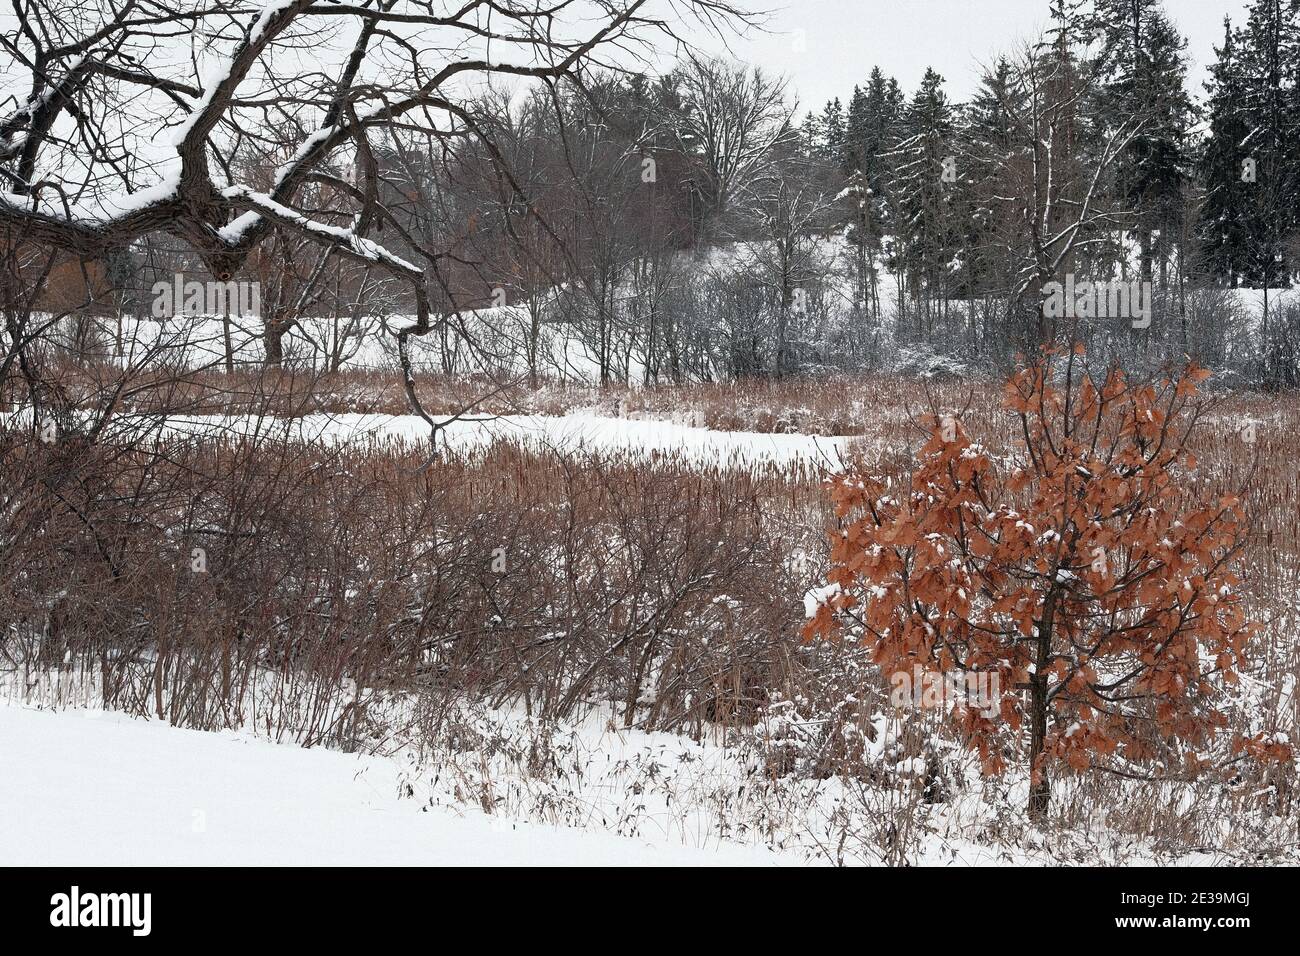 Wunderbare gedämpfte Farben einer winterschneebedeckten Baumgrenze hinter einigen getrockneten hohen Gräsern am Arboretum, Ottawa, Ontario, Kanada. Stockfoto